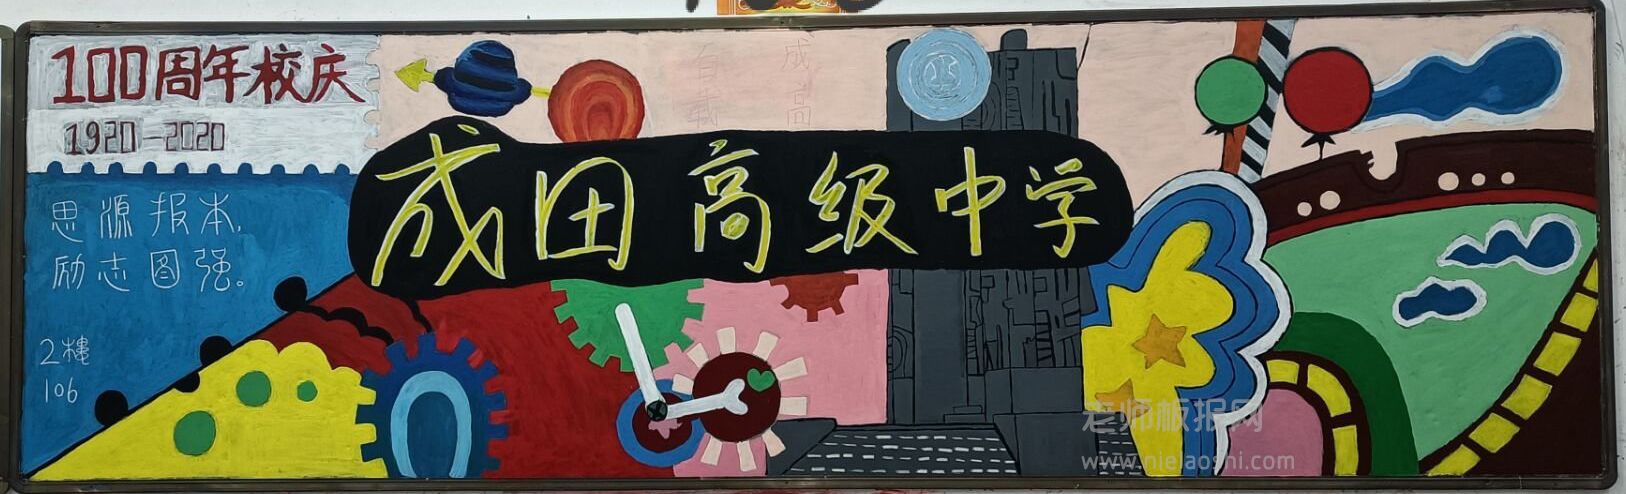 成田高级中学100周年校庆黑板报图片